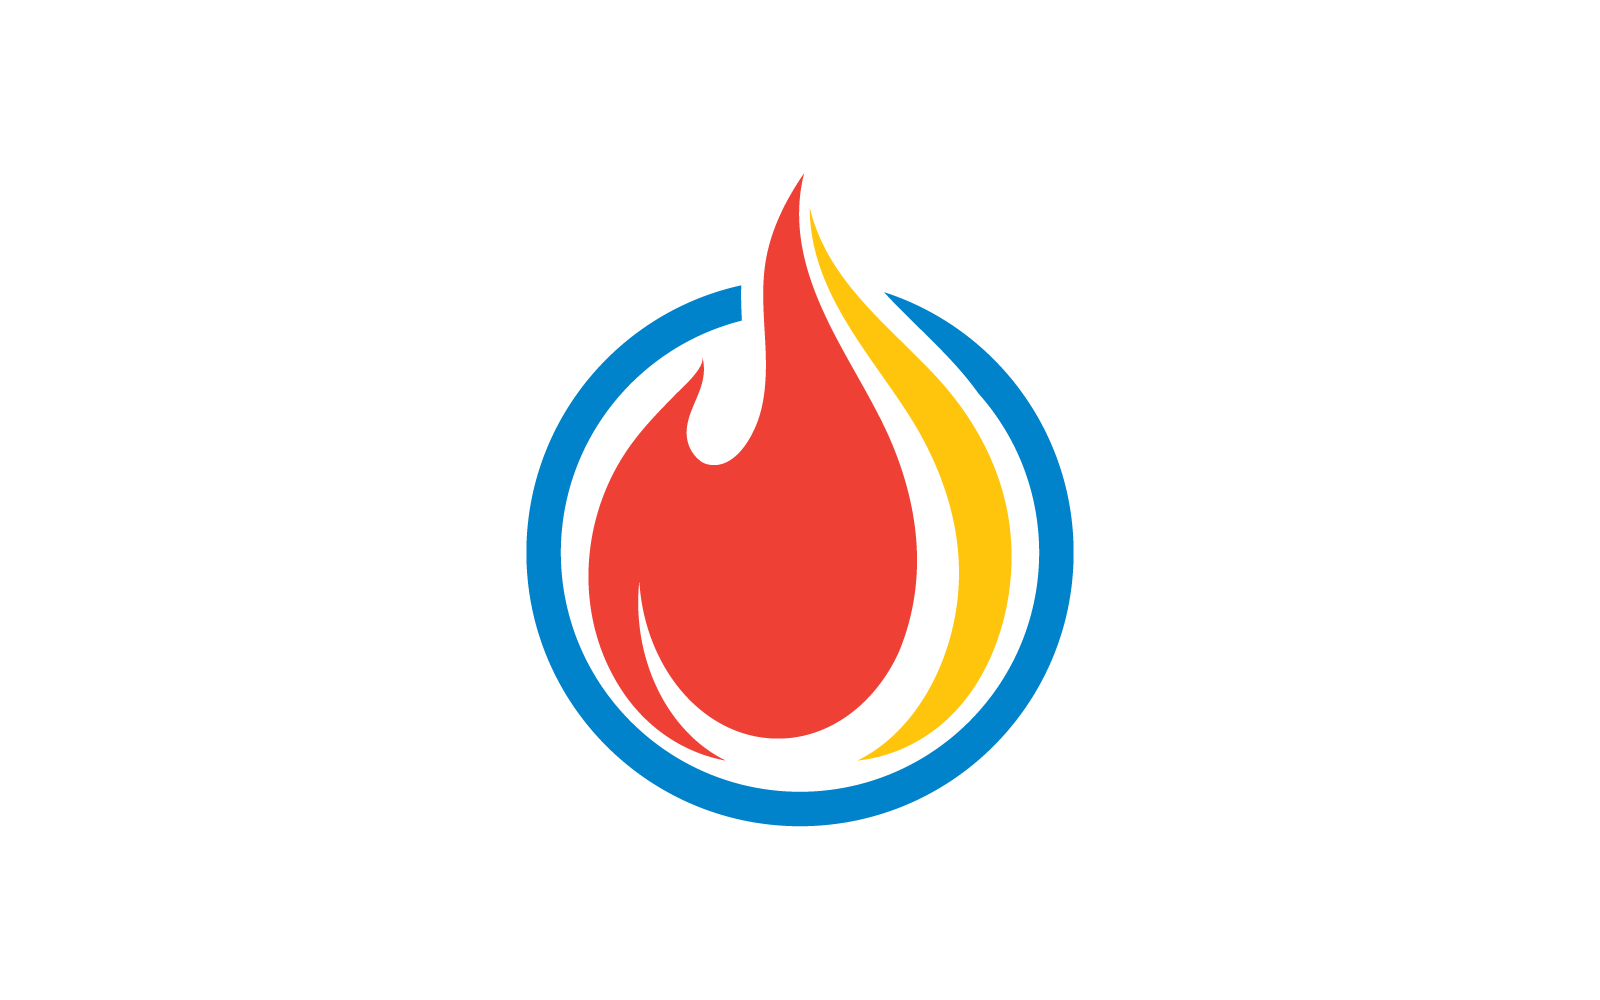 Feuerflamme Öl-, Gas- und Energiedesign-Logo-Konzept